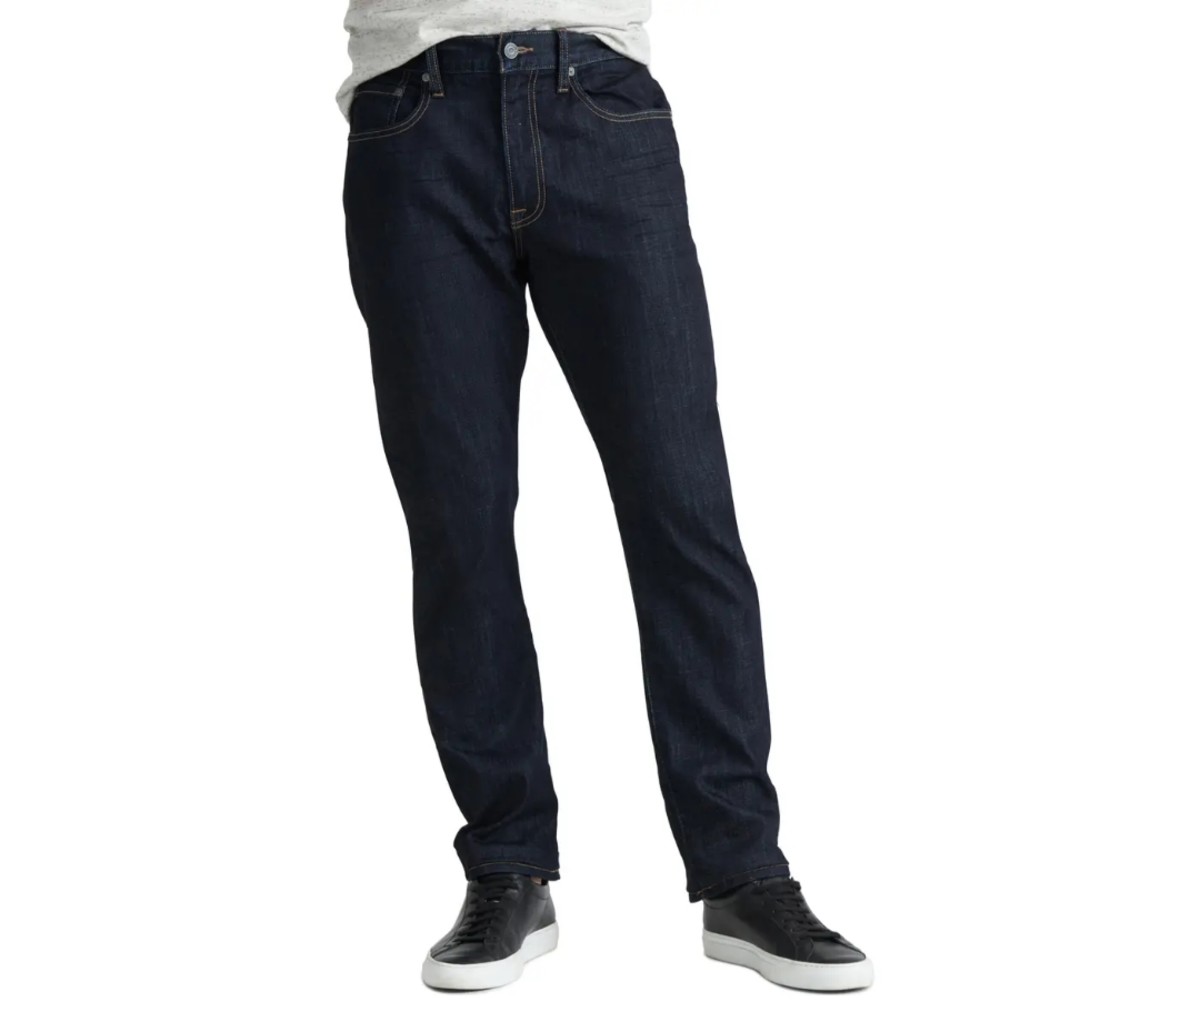 Best Jeans for Men: 25 Pairs of Denim for 5 Major Body Types - Men's ...